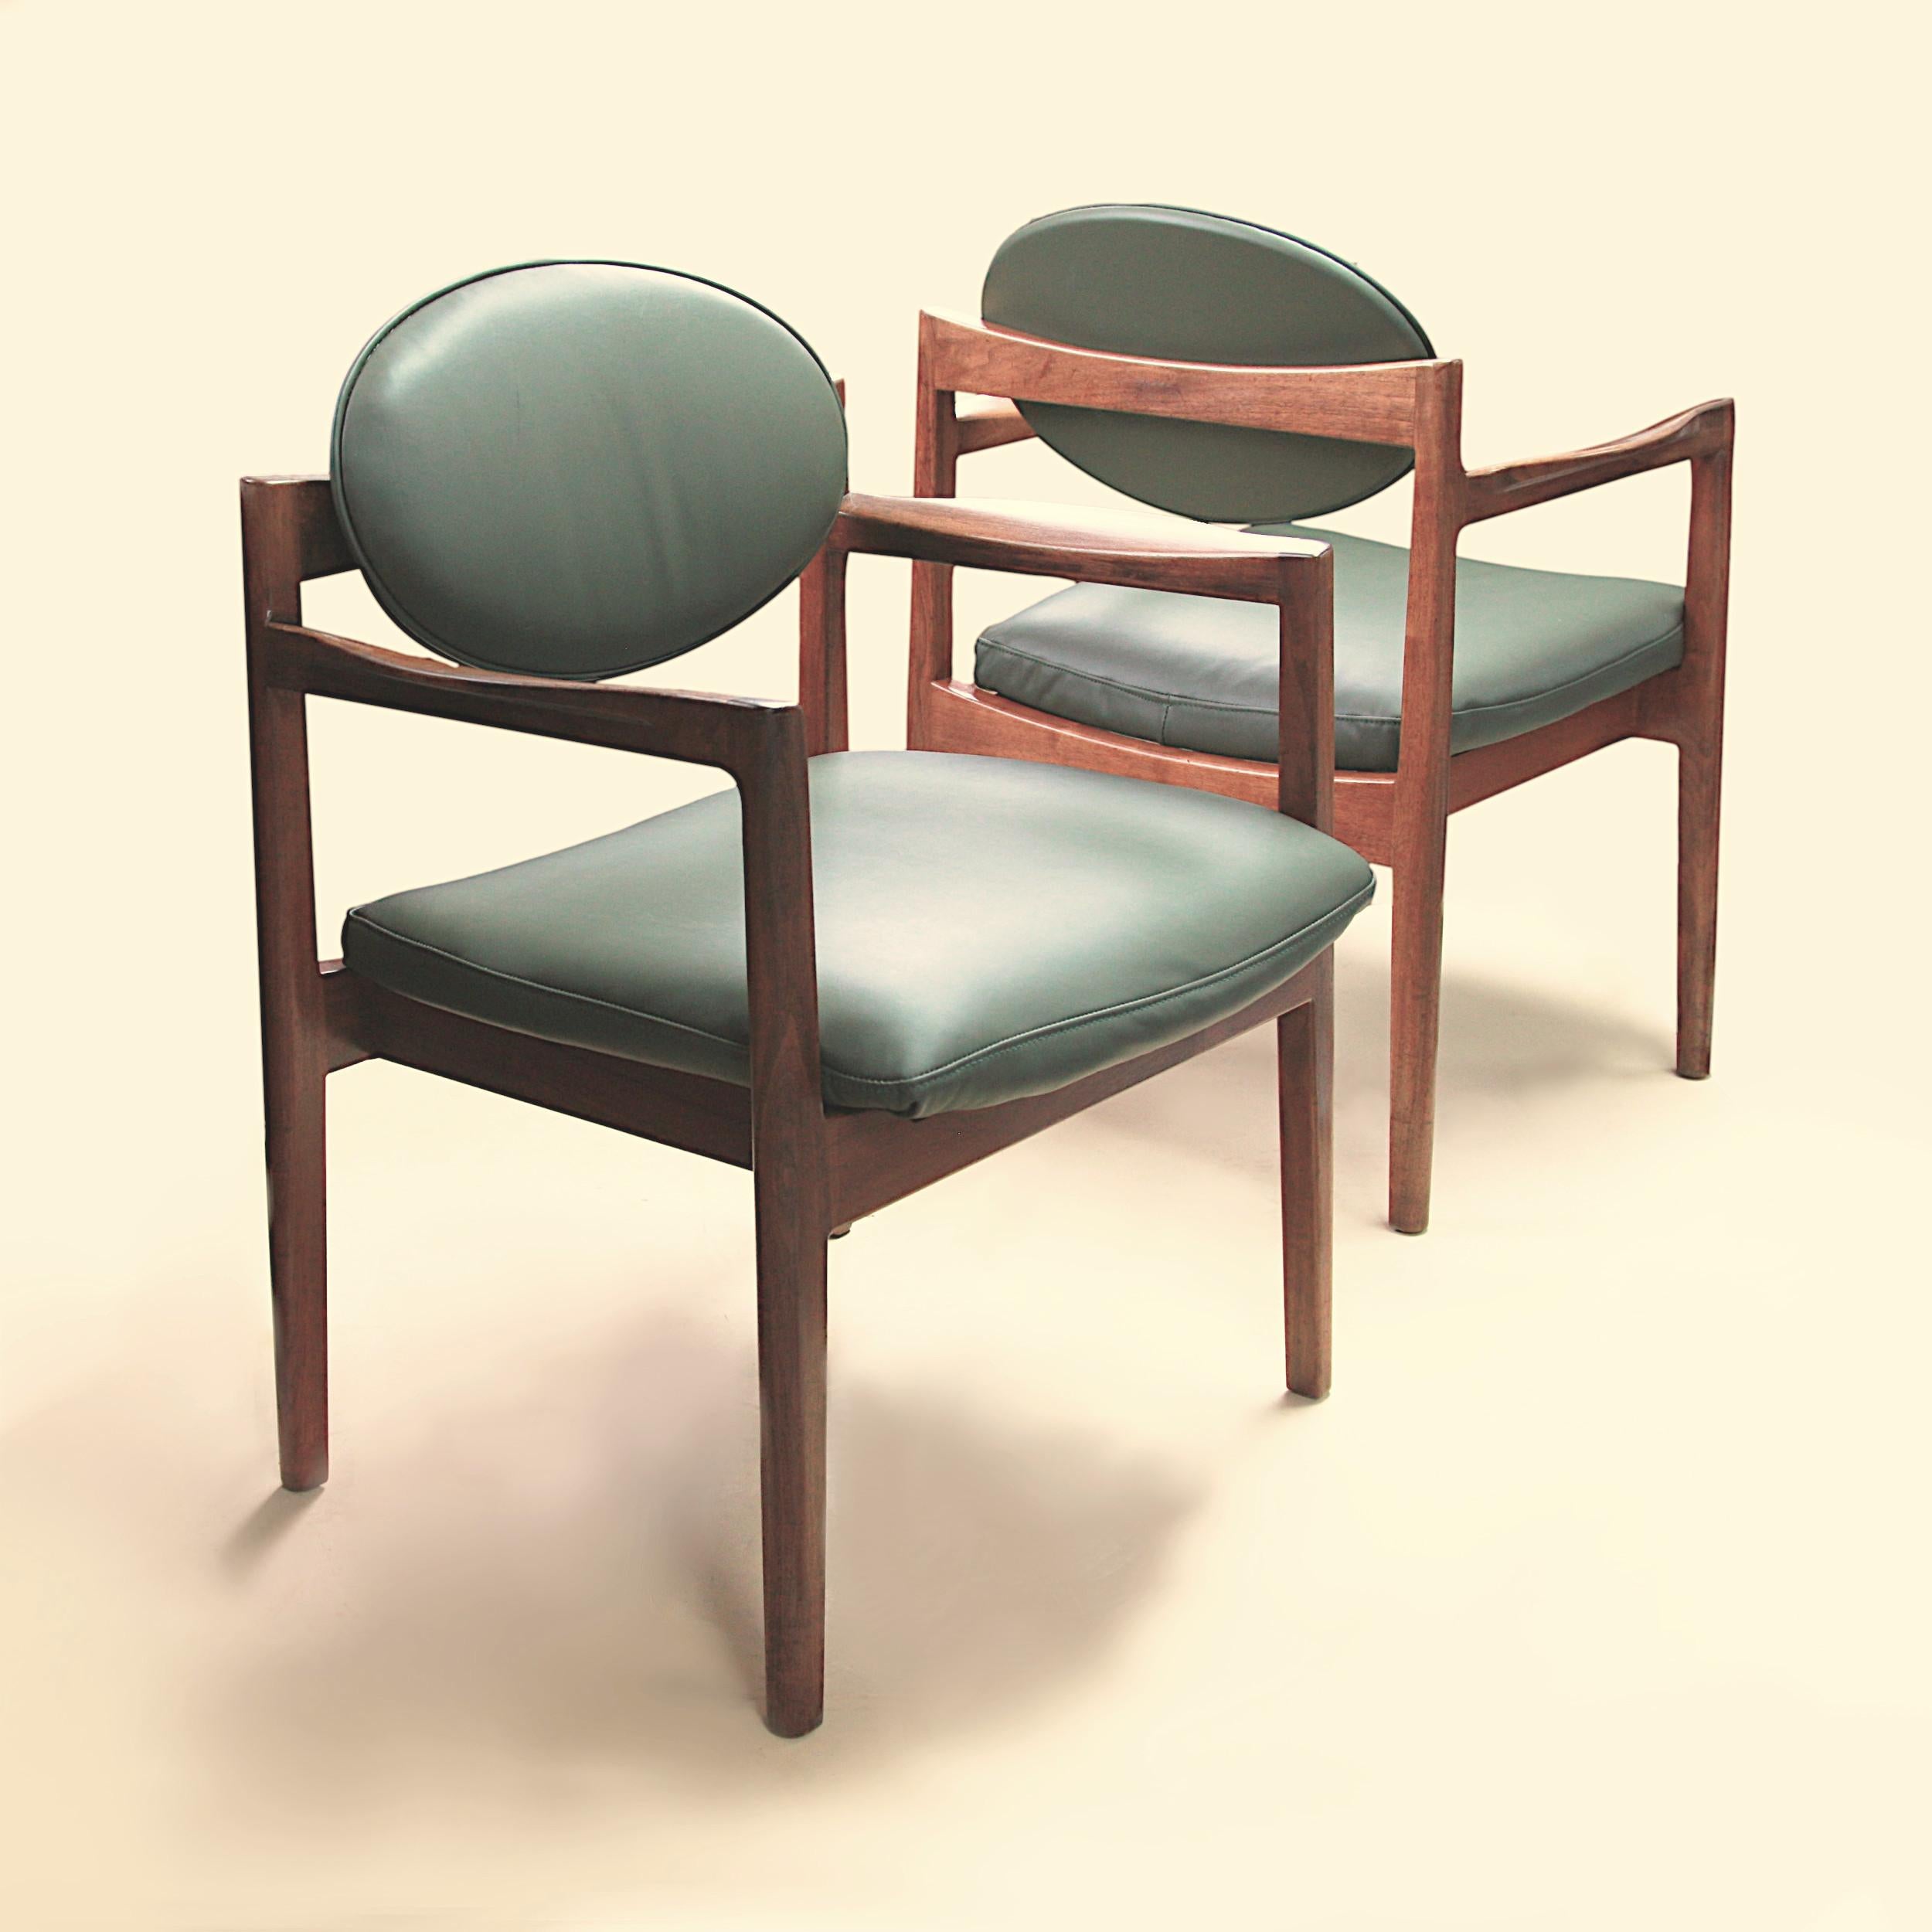 Une fantastique paire de fauteuils club en cuir vert et noyer de style Mid-Century Modern du designer américain d'origine danoise Jens Risom. Datant des années 1960, ces chaises sont en très bon état. Les chaises sont dotées d'un superbe design